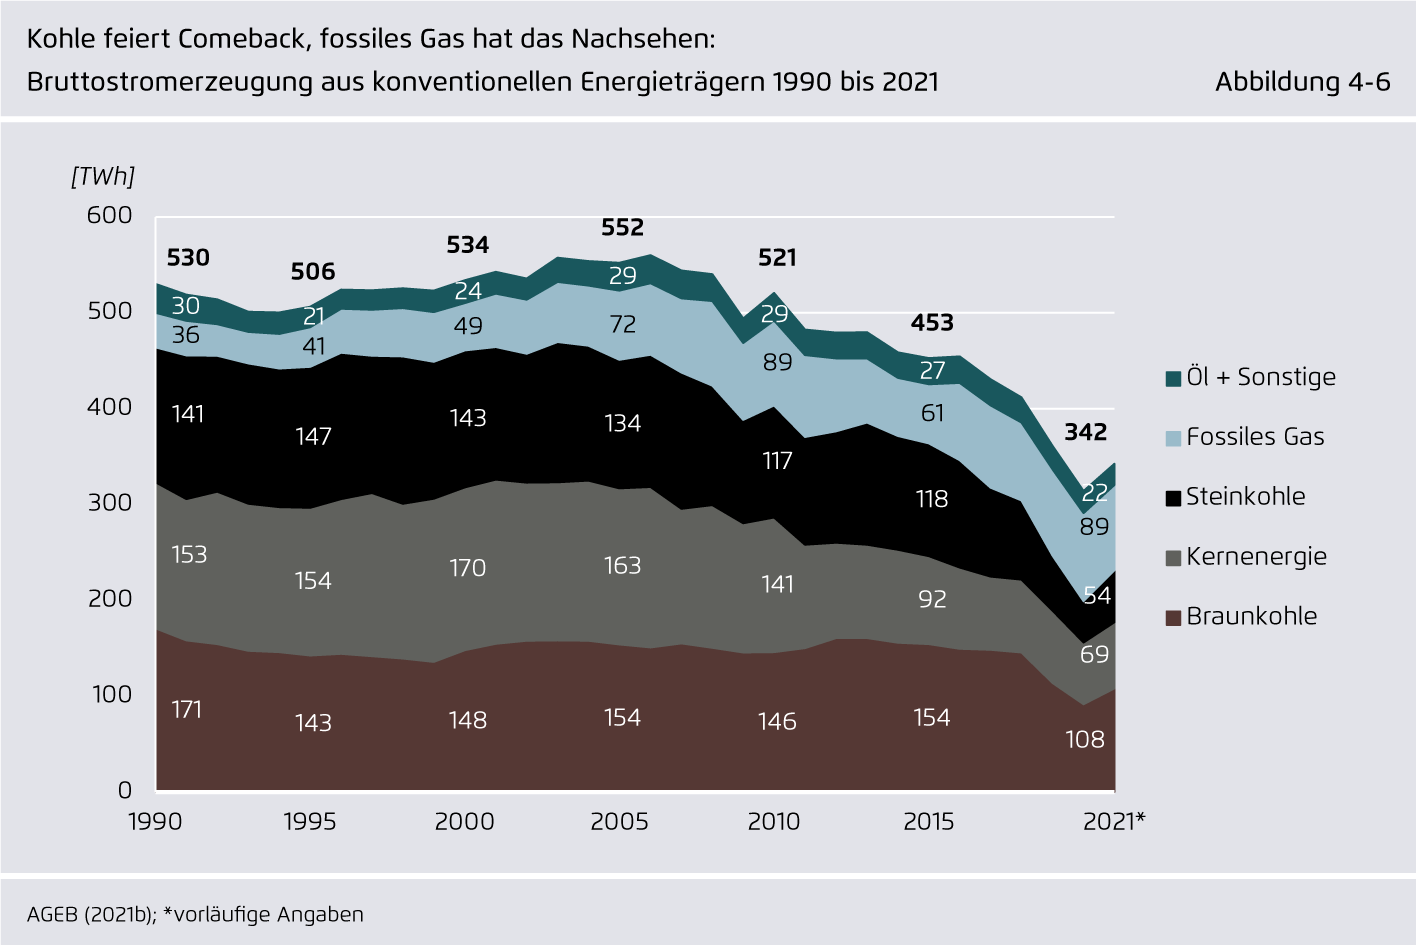 Preview for Kohle feiert Comeback, fossiles Gas hat das Nachsehen: Bruttostromerzeugung aus konventionellen Energieträgern 1990 bis 2021